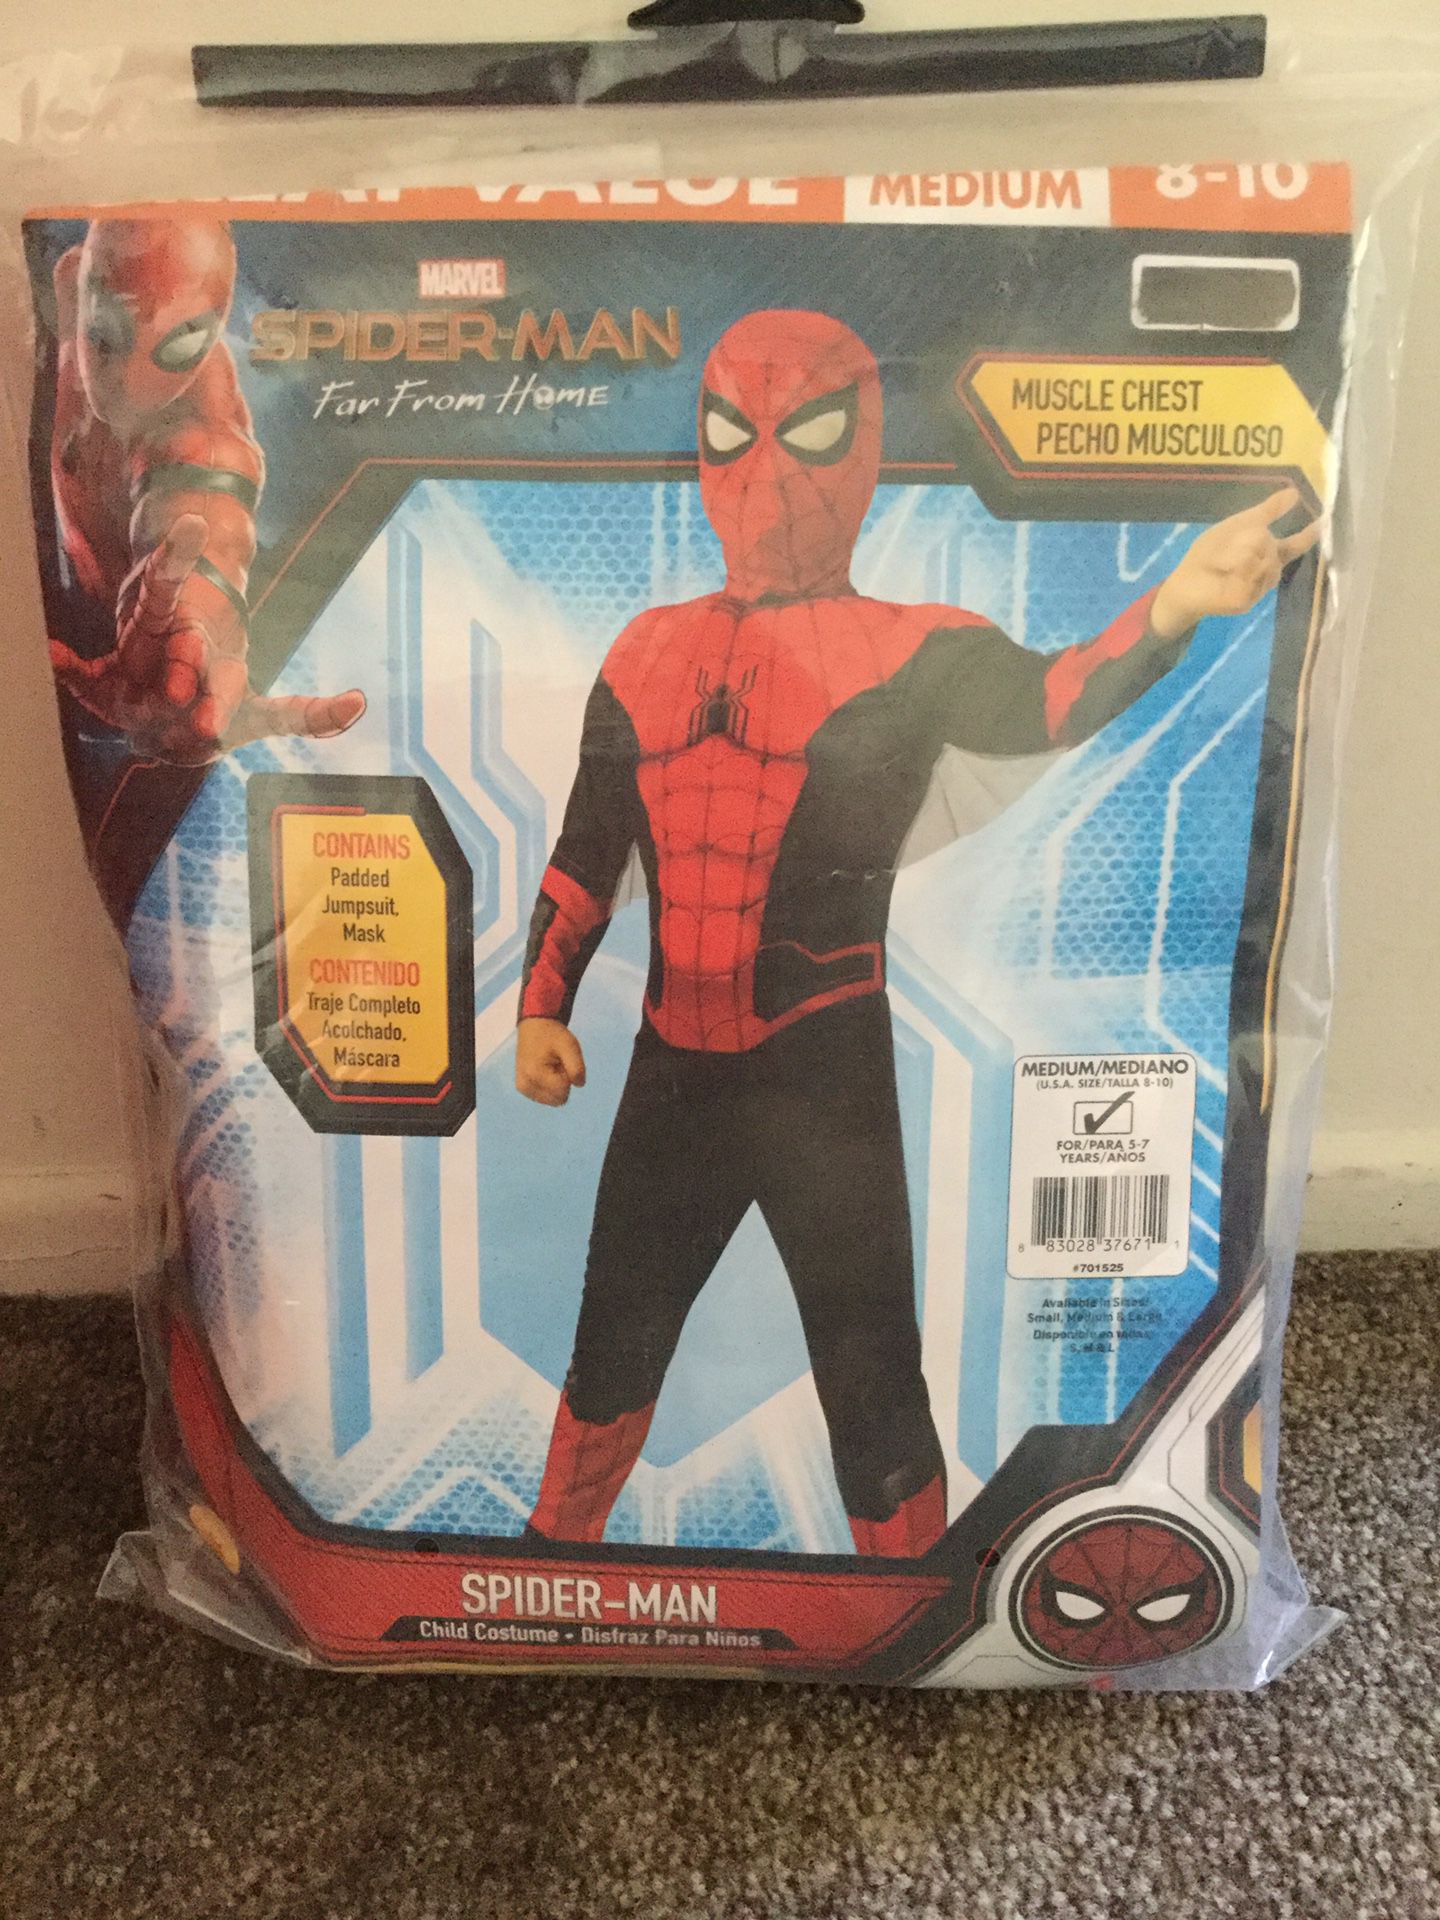 Kids Spider-Man Costume